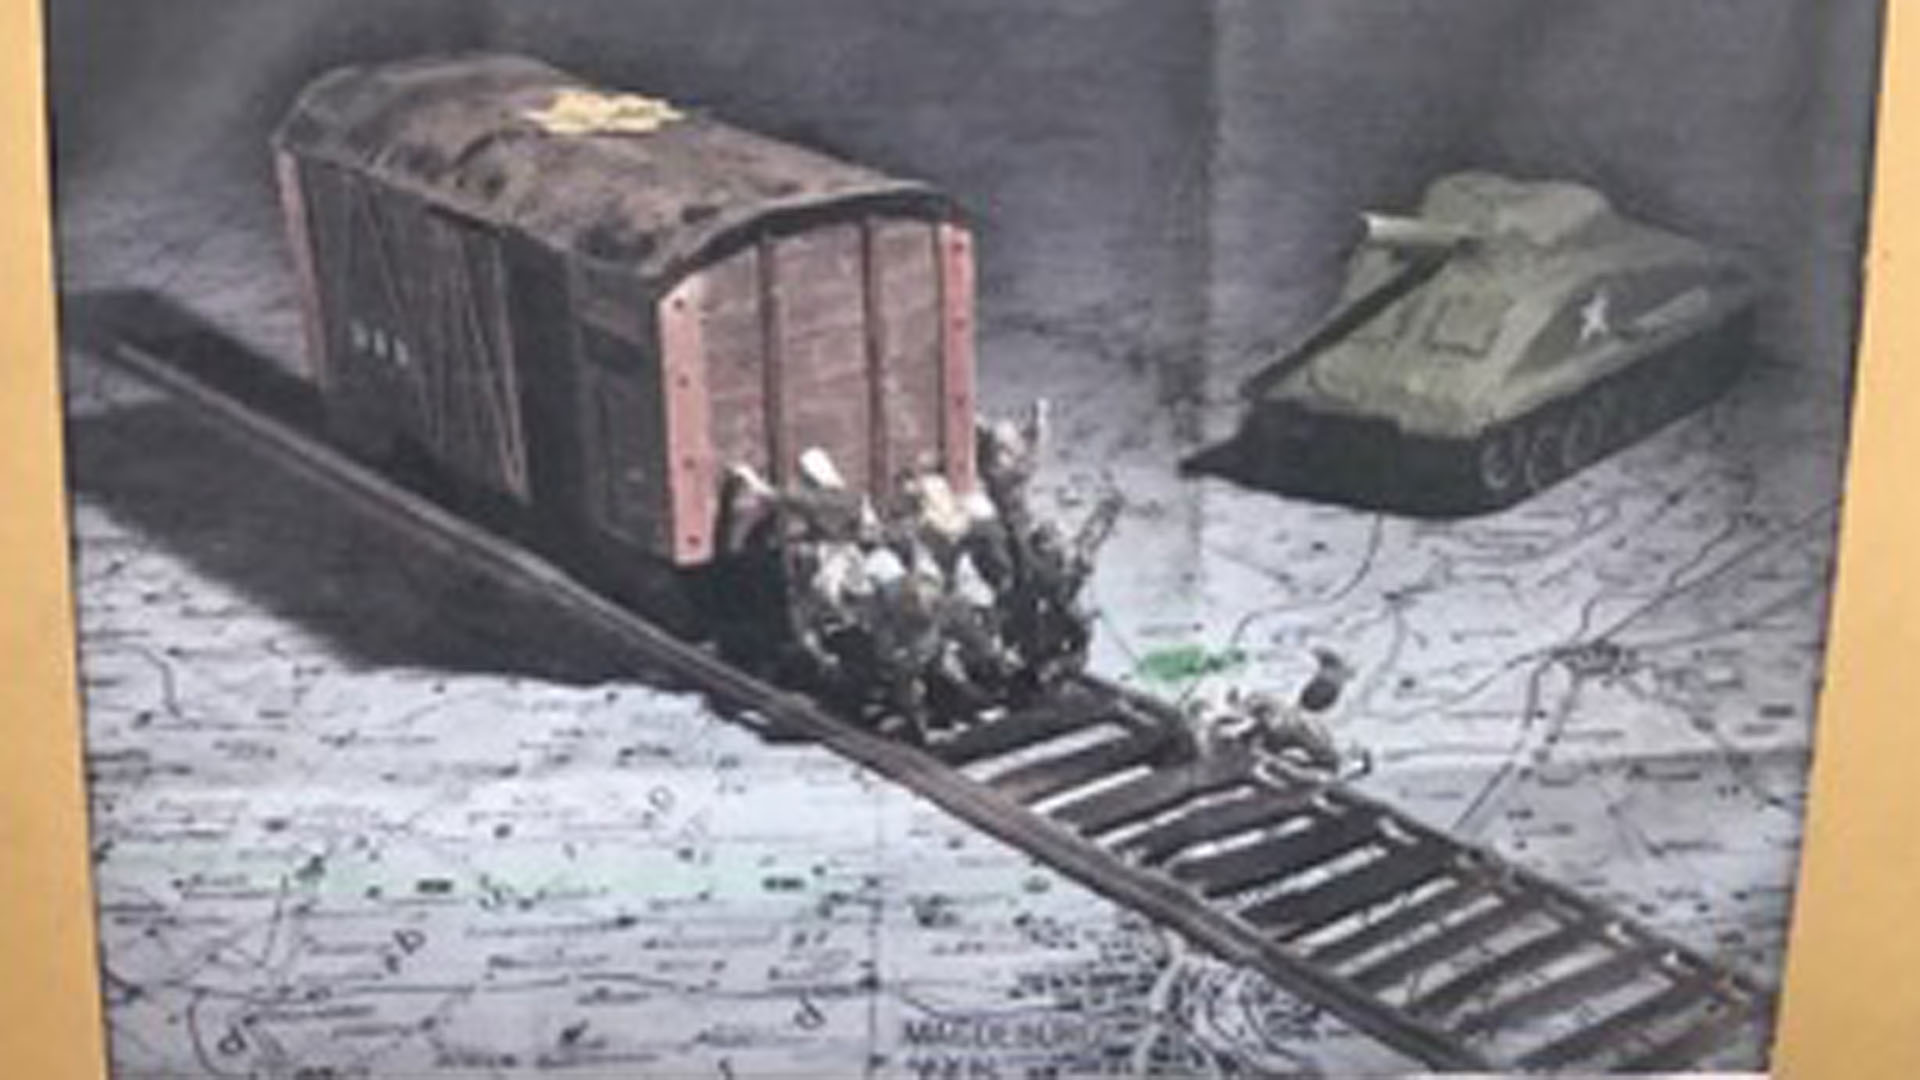 Später malte Sara Atzmon ein Bild von den Häftlingen, die den Waggon wegschieben wollten